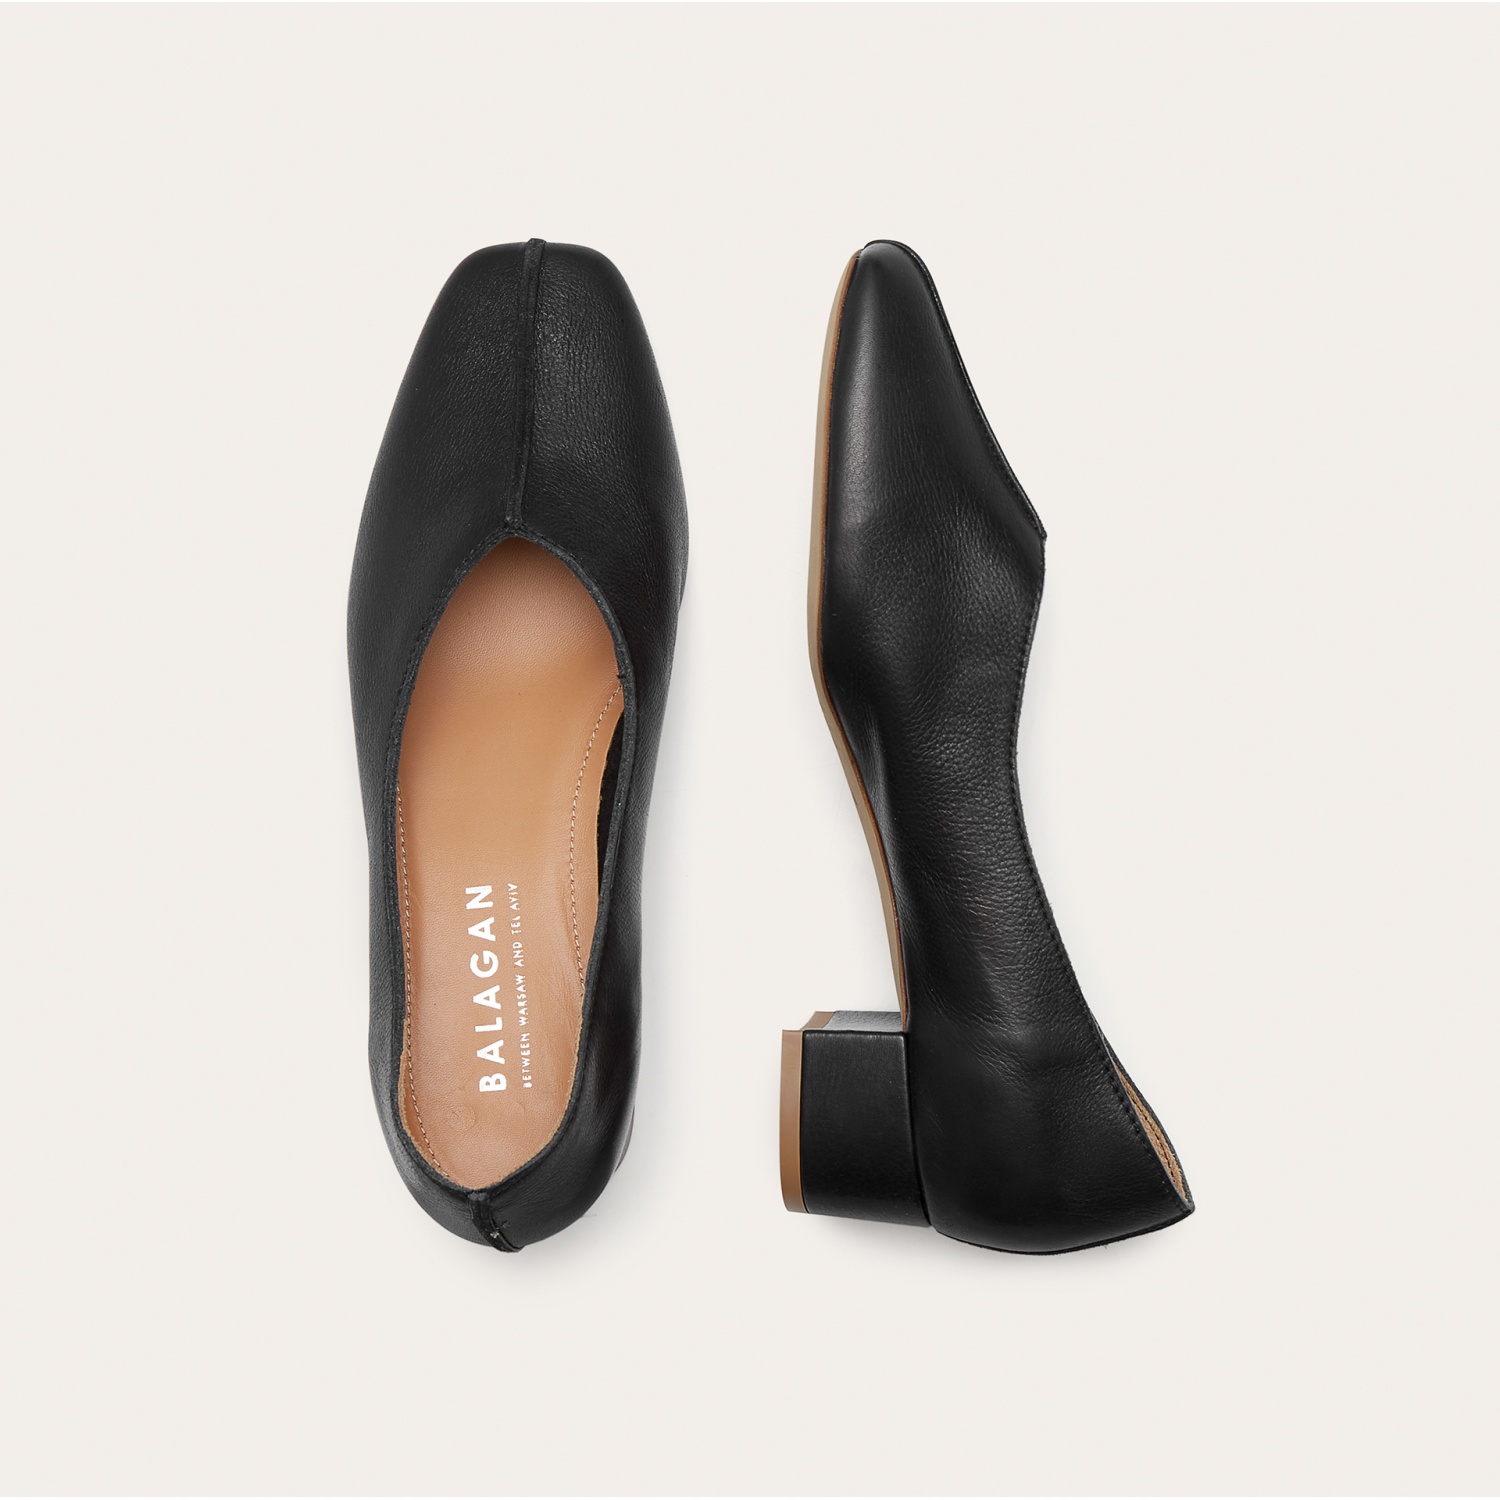  Apulia Heels, black-4 